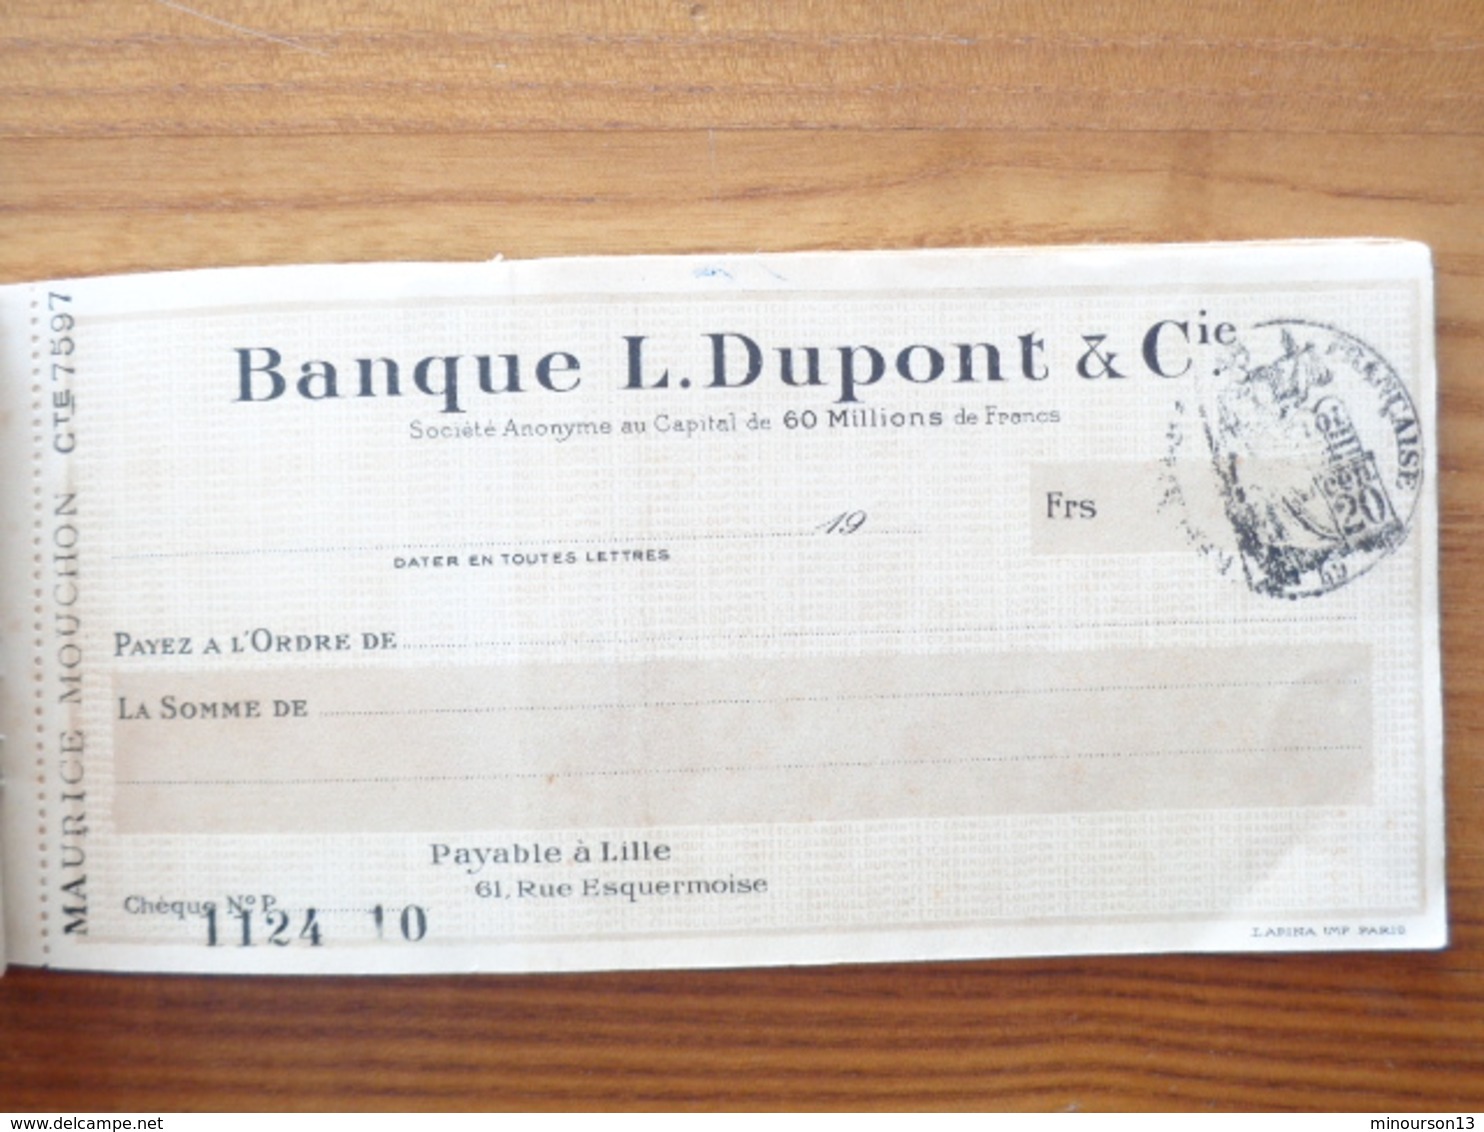 1926 - CHEQUIERS BANQUE L. DUPONT & Cie - Chèques & Chèques De Voyage